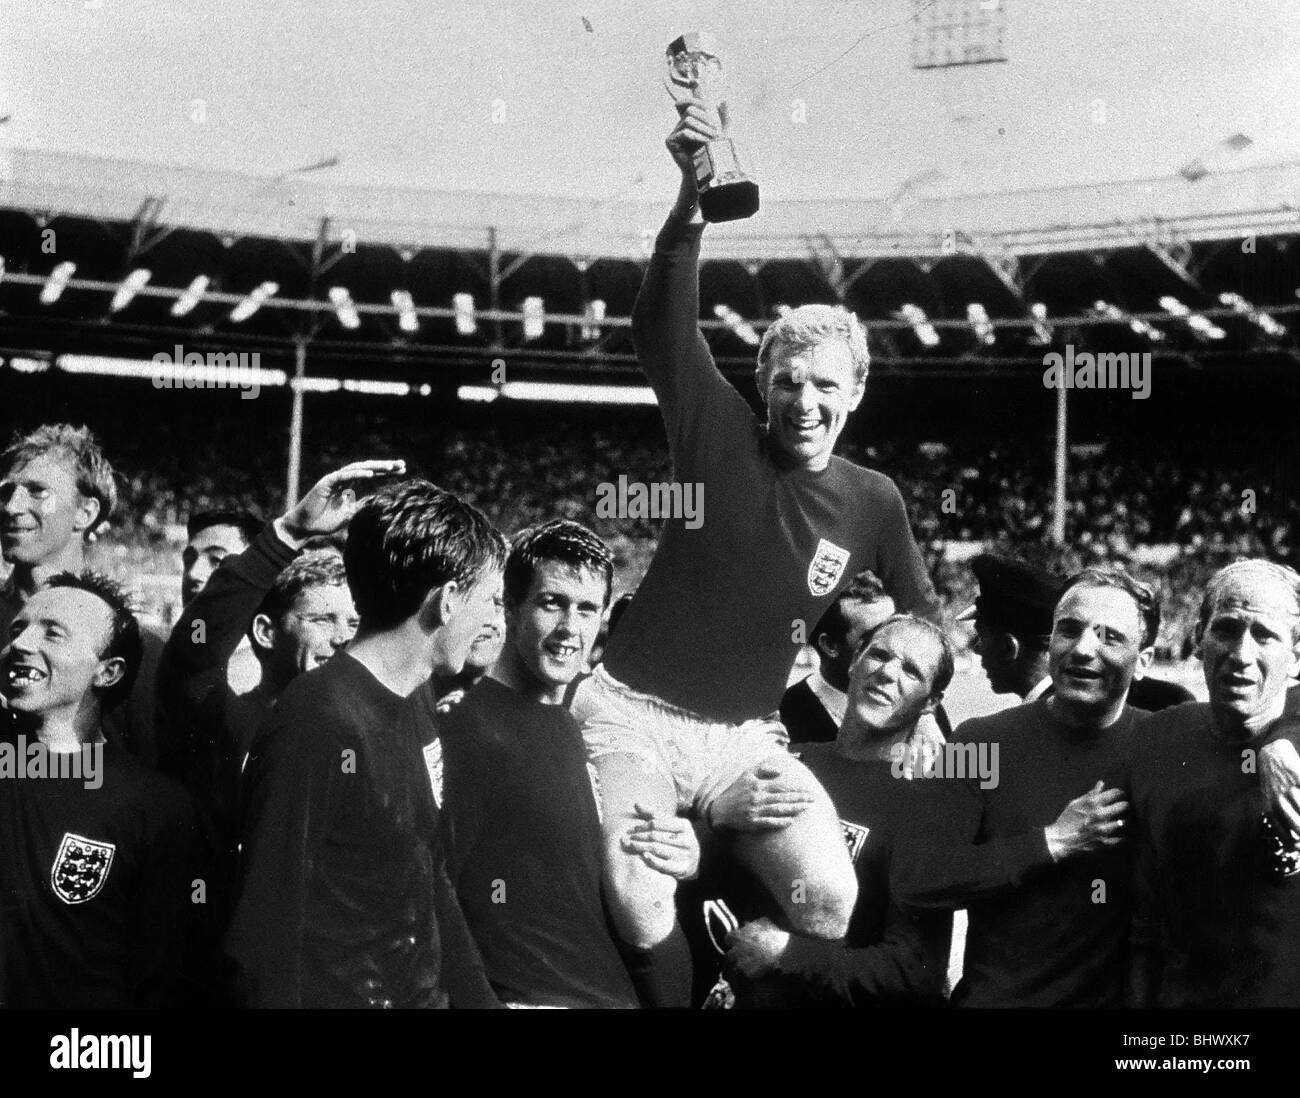 Welt-Cup-Finale hält Juli 1966 im Wembley-Stadion England 4 V Westdeutschland 2 nach Verlängerung England Kapitän Bobby Moore empor die Jules-Rimet-Pokal, als er auf den Schultern seiner Teamkollegen nach dem WM-Sieg sitzt Stockfoto